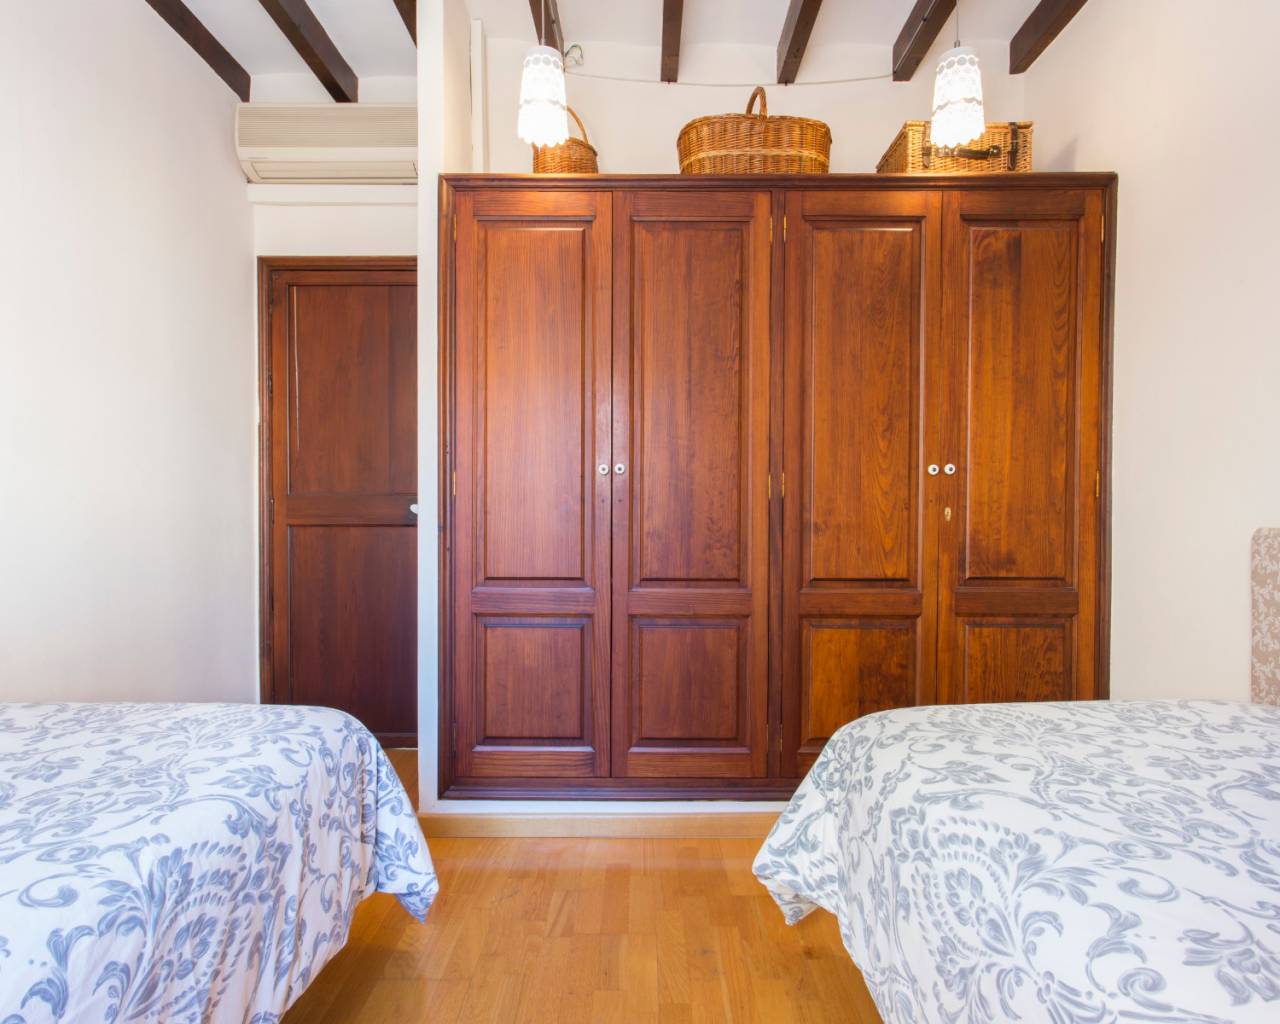 2 rooms and bath for rent in Palma De Mallorca-estate agents in Mallorca